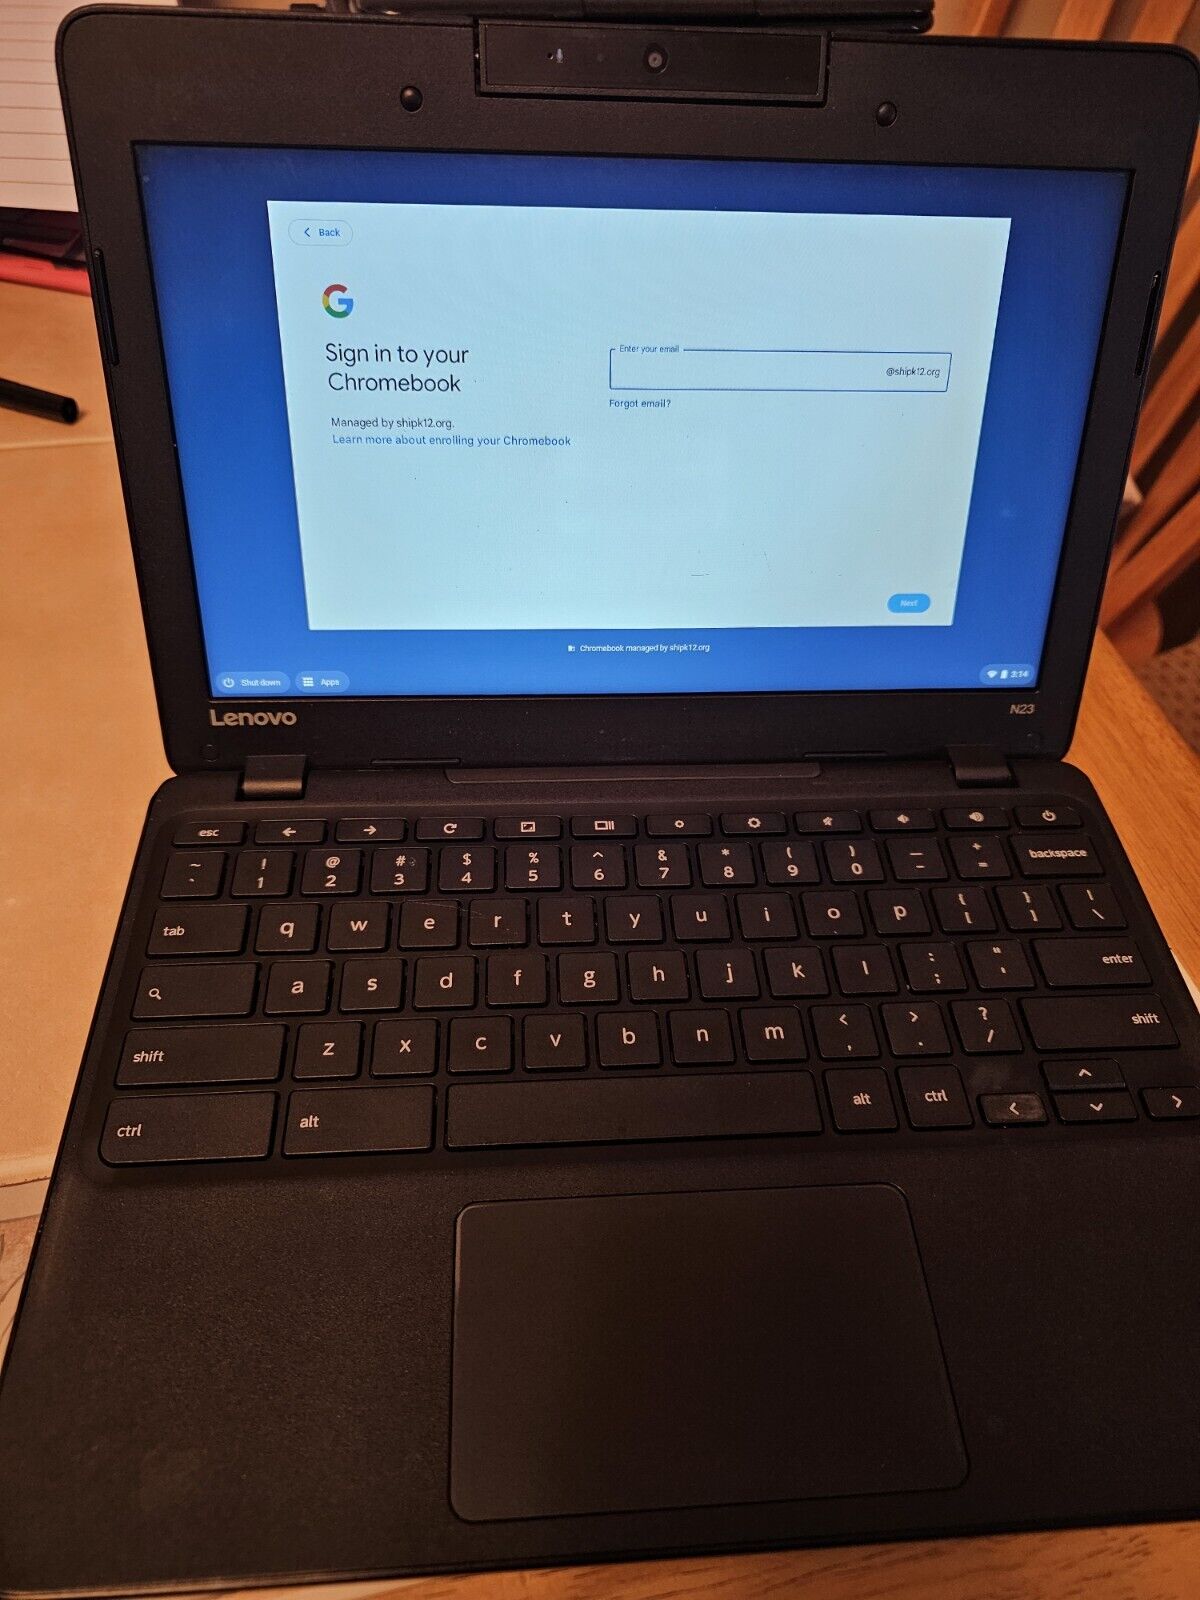 Pair of Lenovo N23 Chromebook 11.6-in Enterprise locked